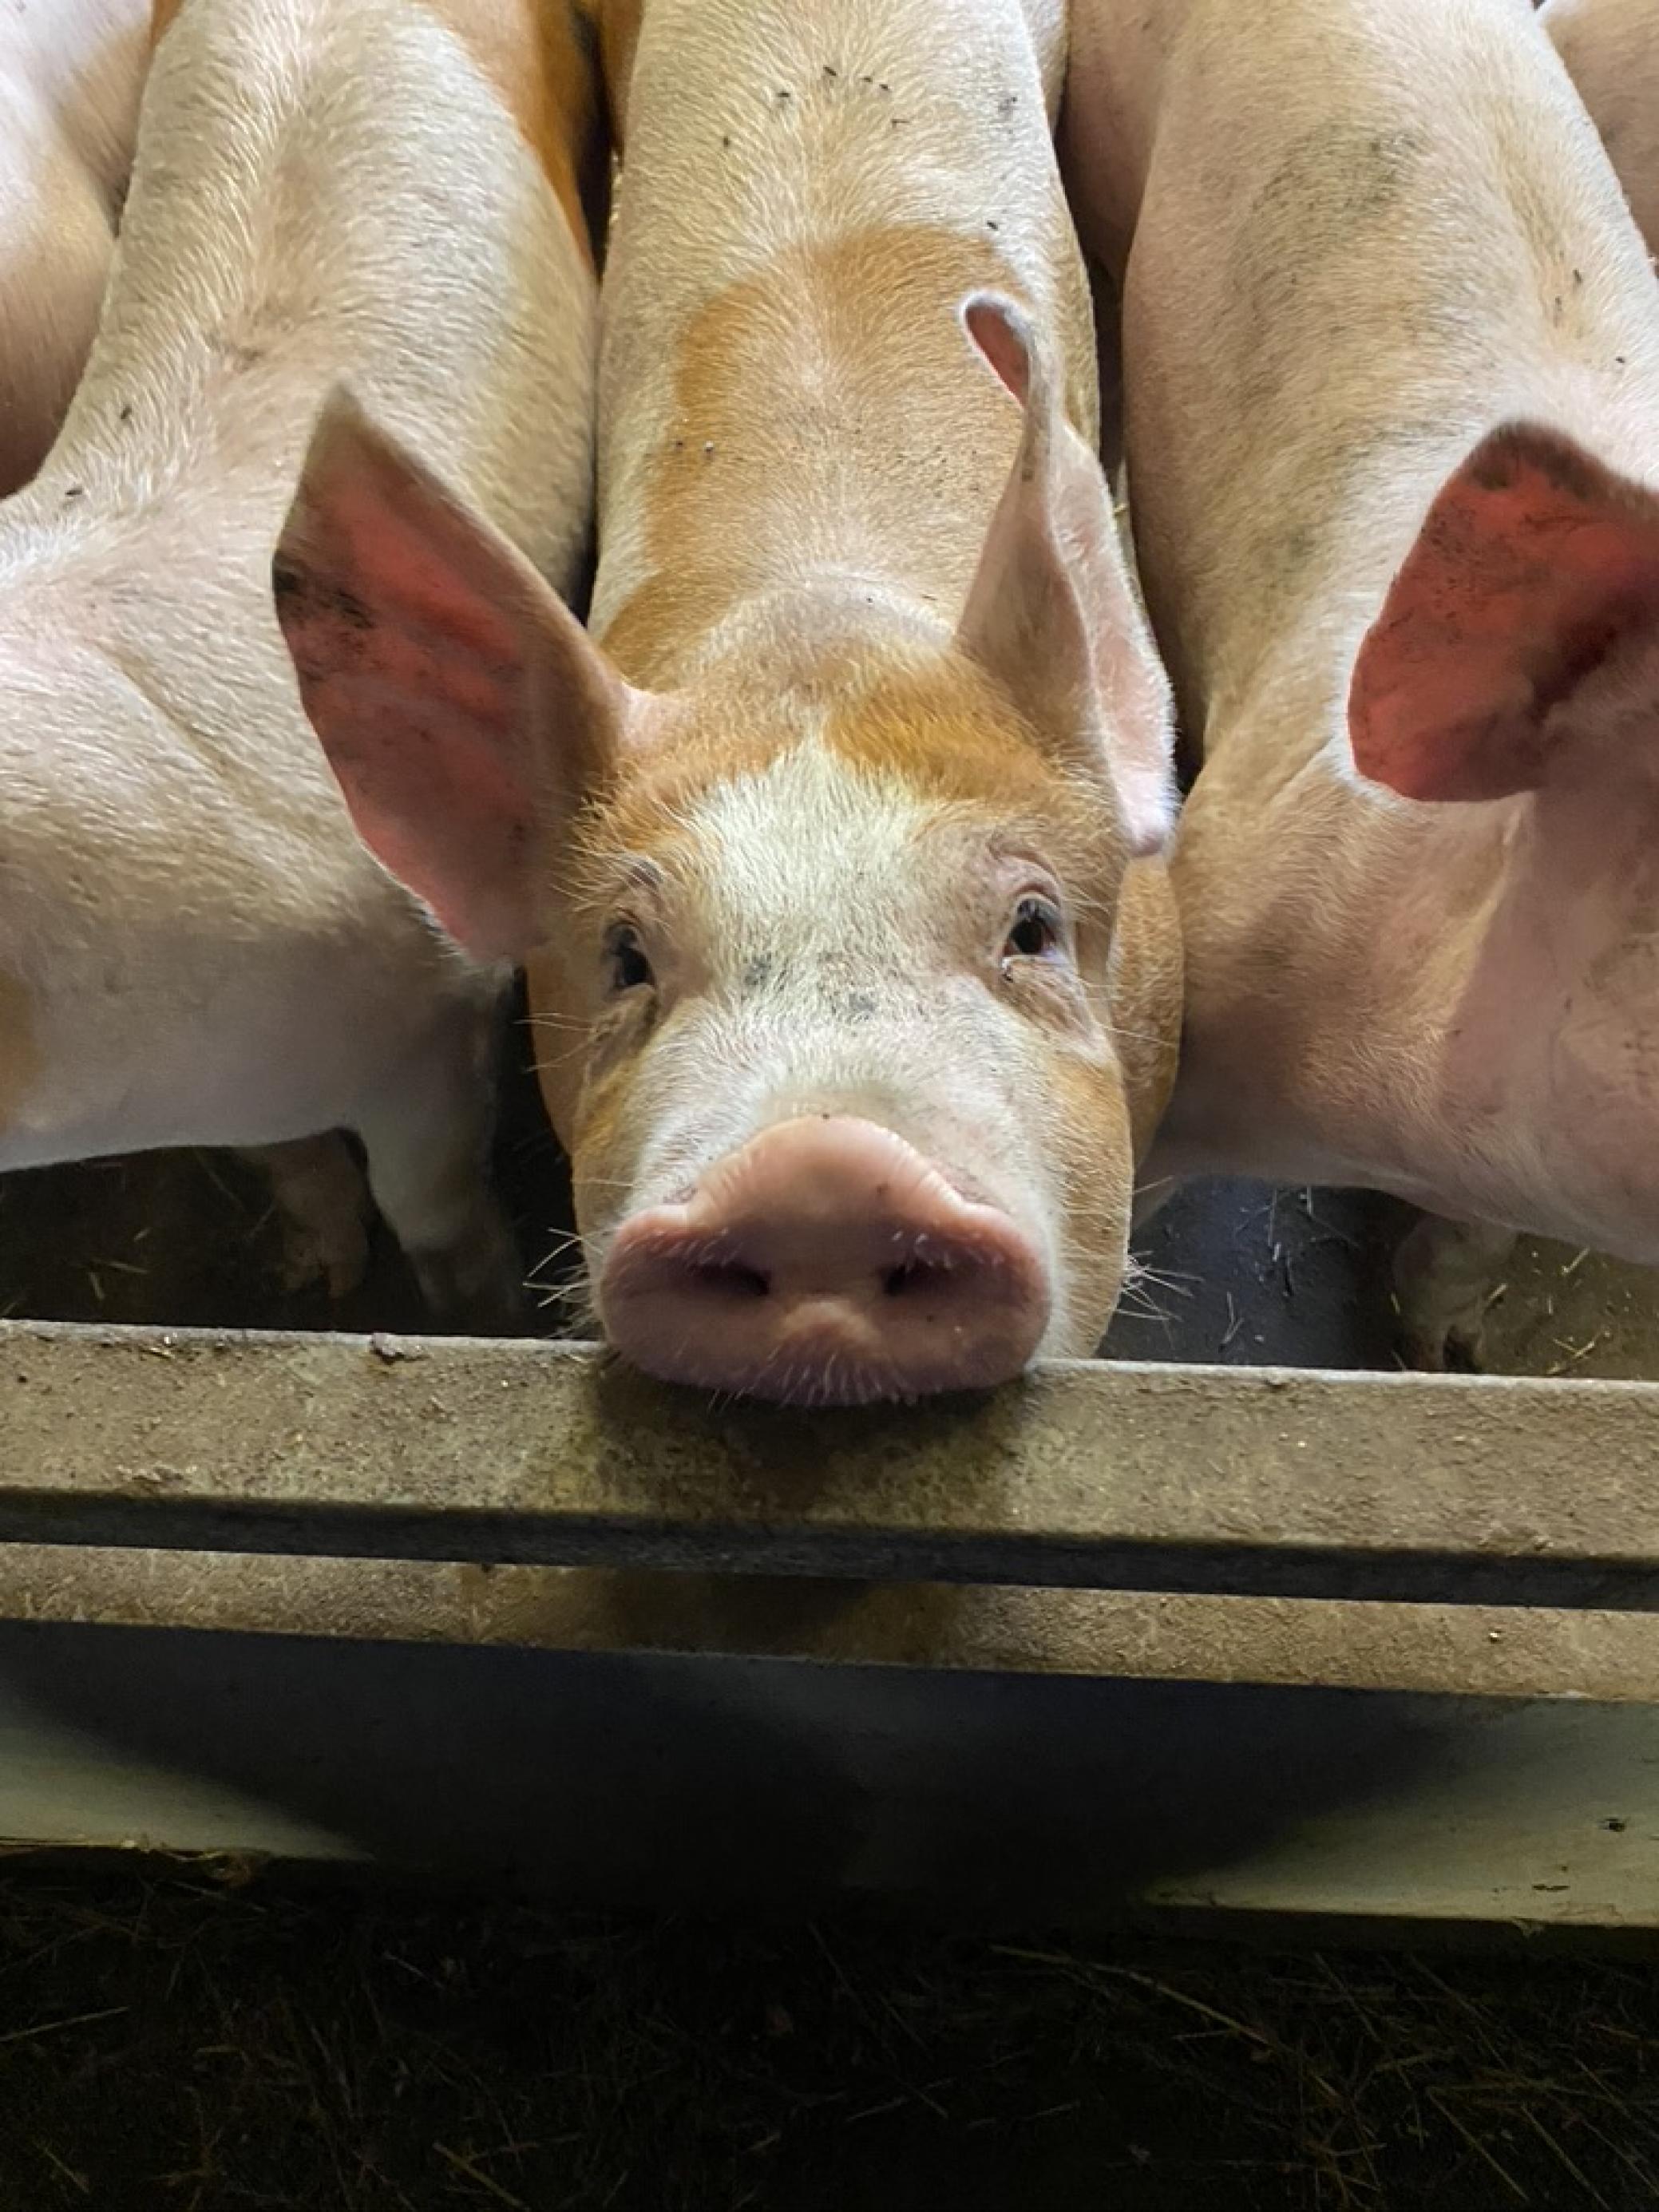 Ein junges Schwein in einem Nutztierstall, dicht gedrängt neben anderen. Es schaut die Betrachterin direkt an.